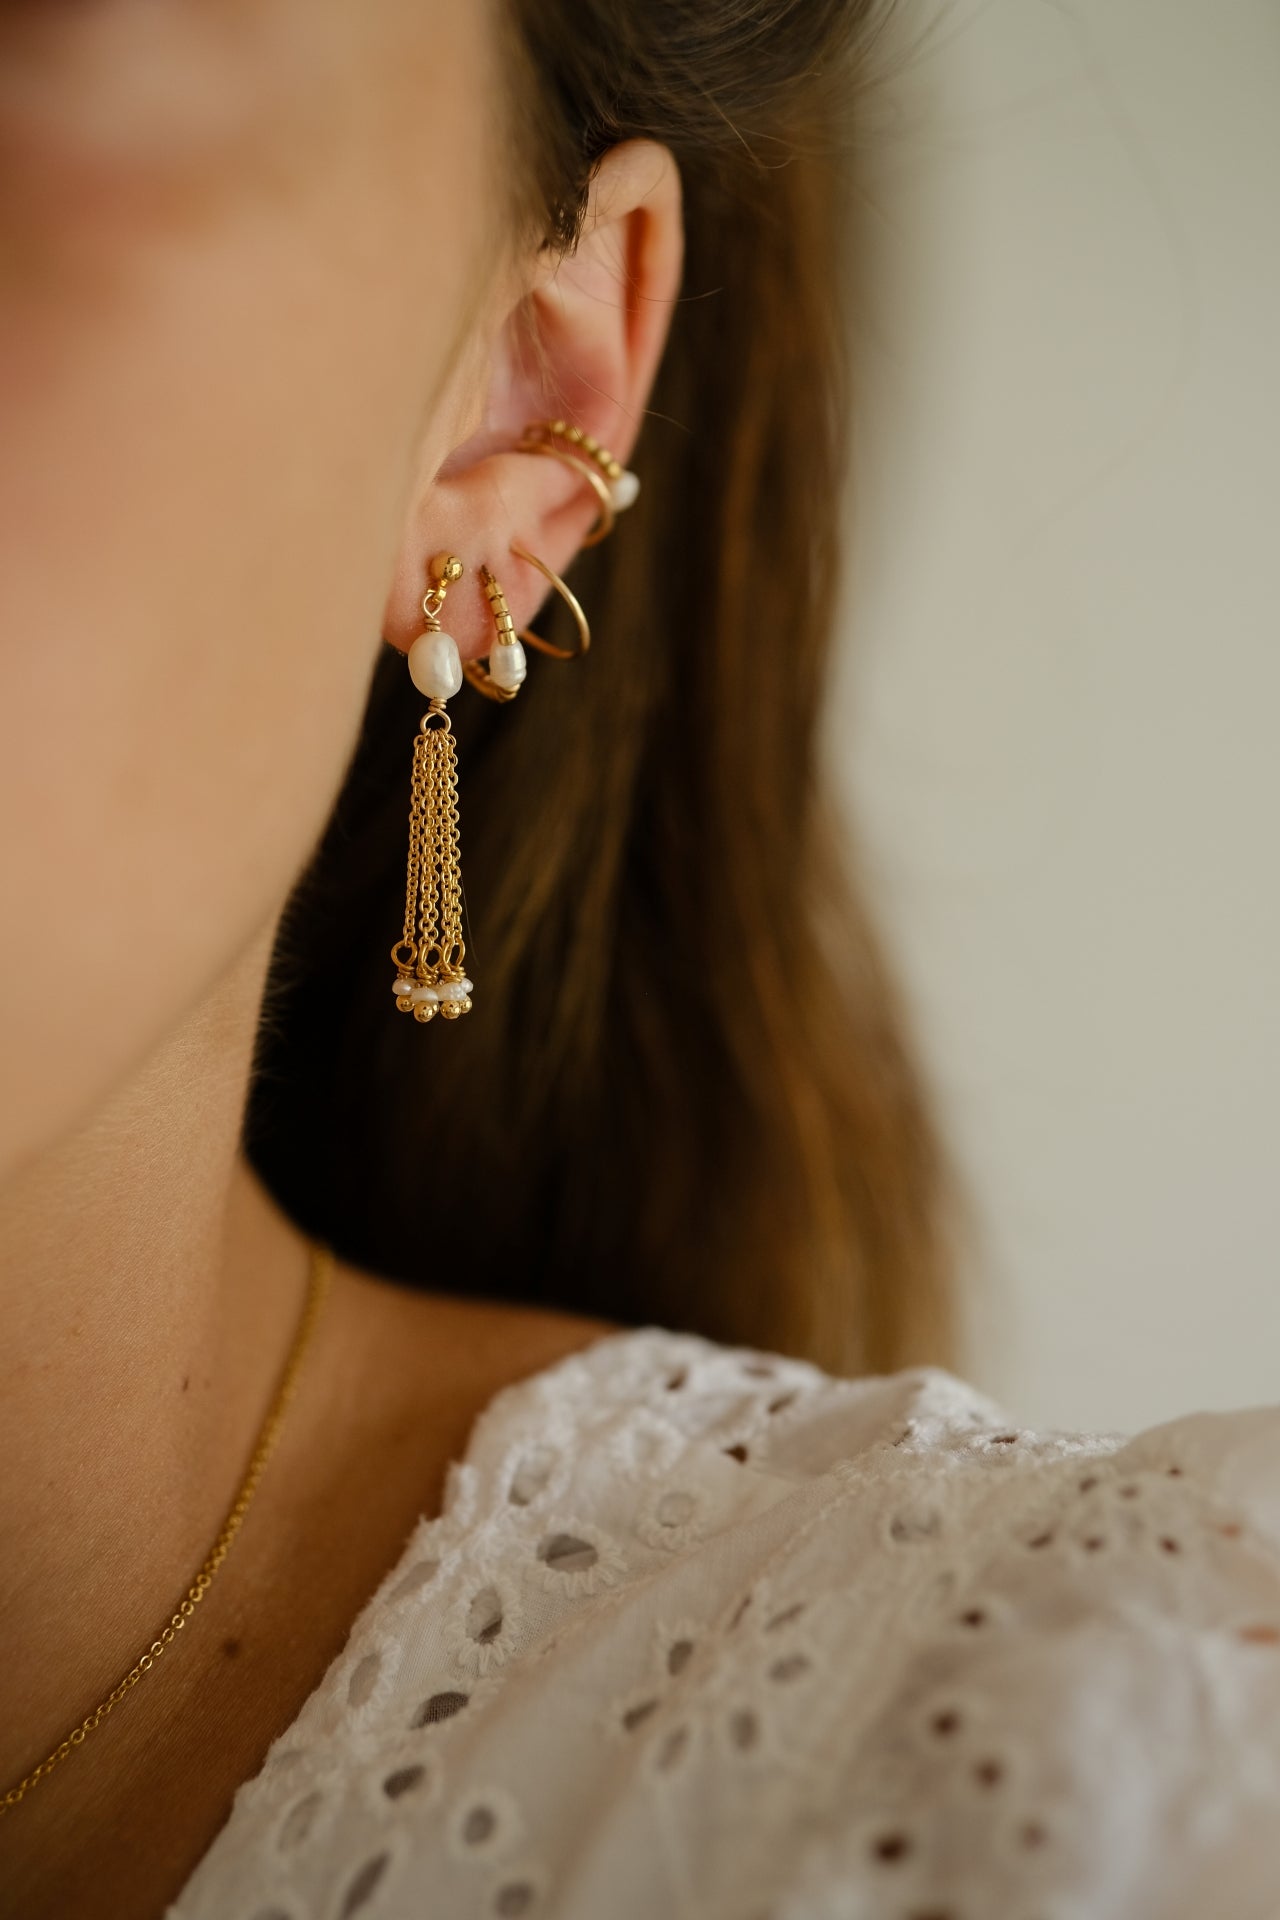 “Respect” earrings